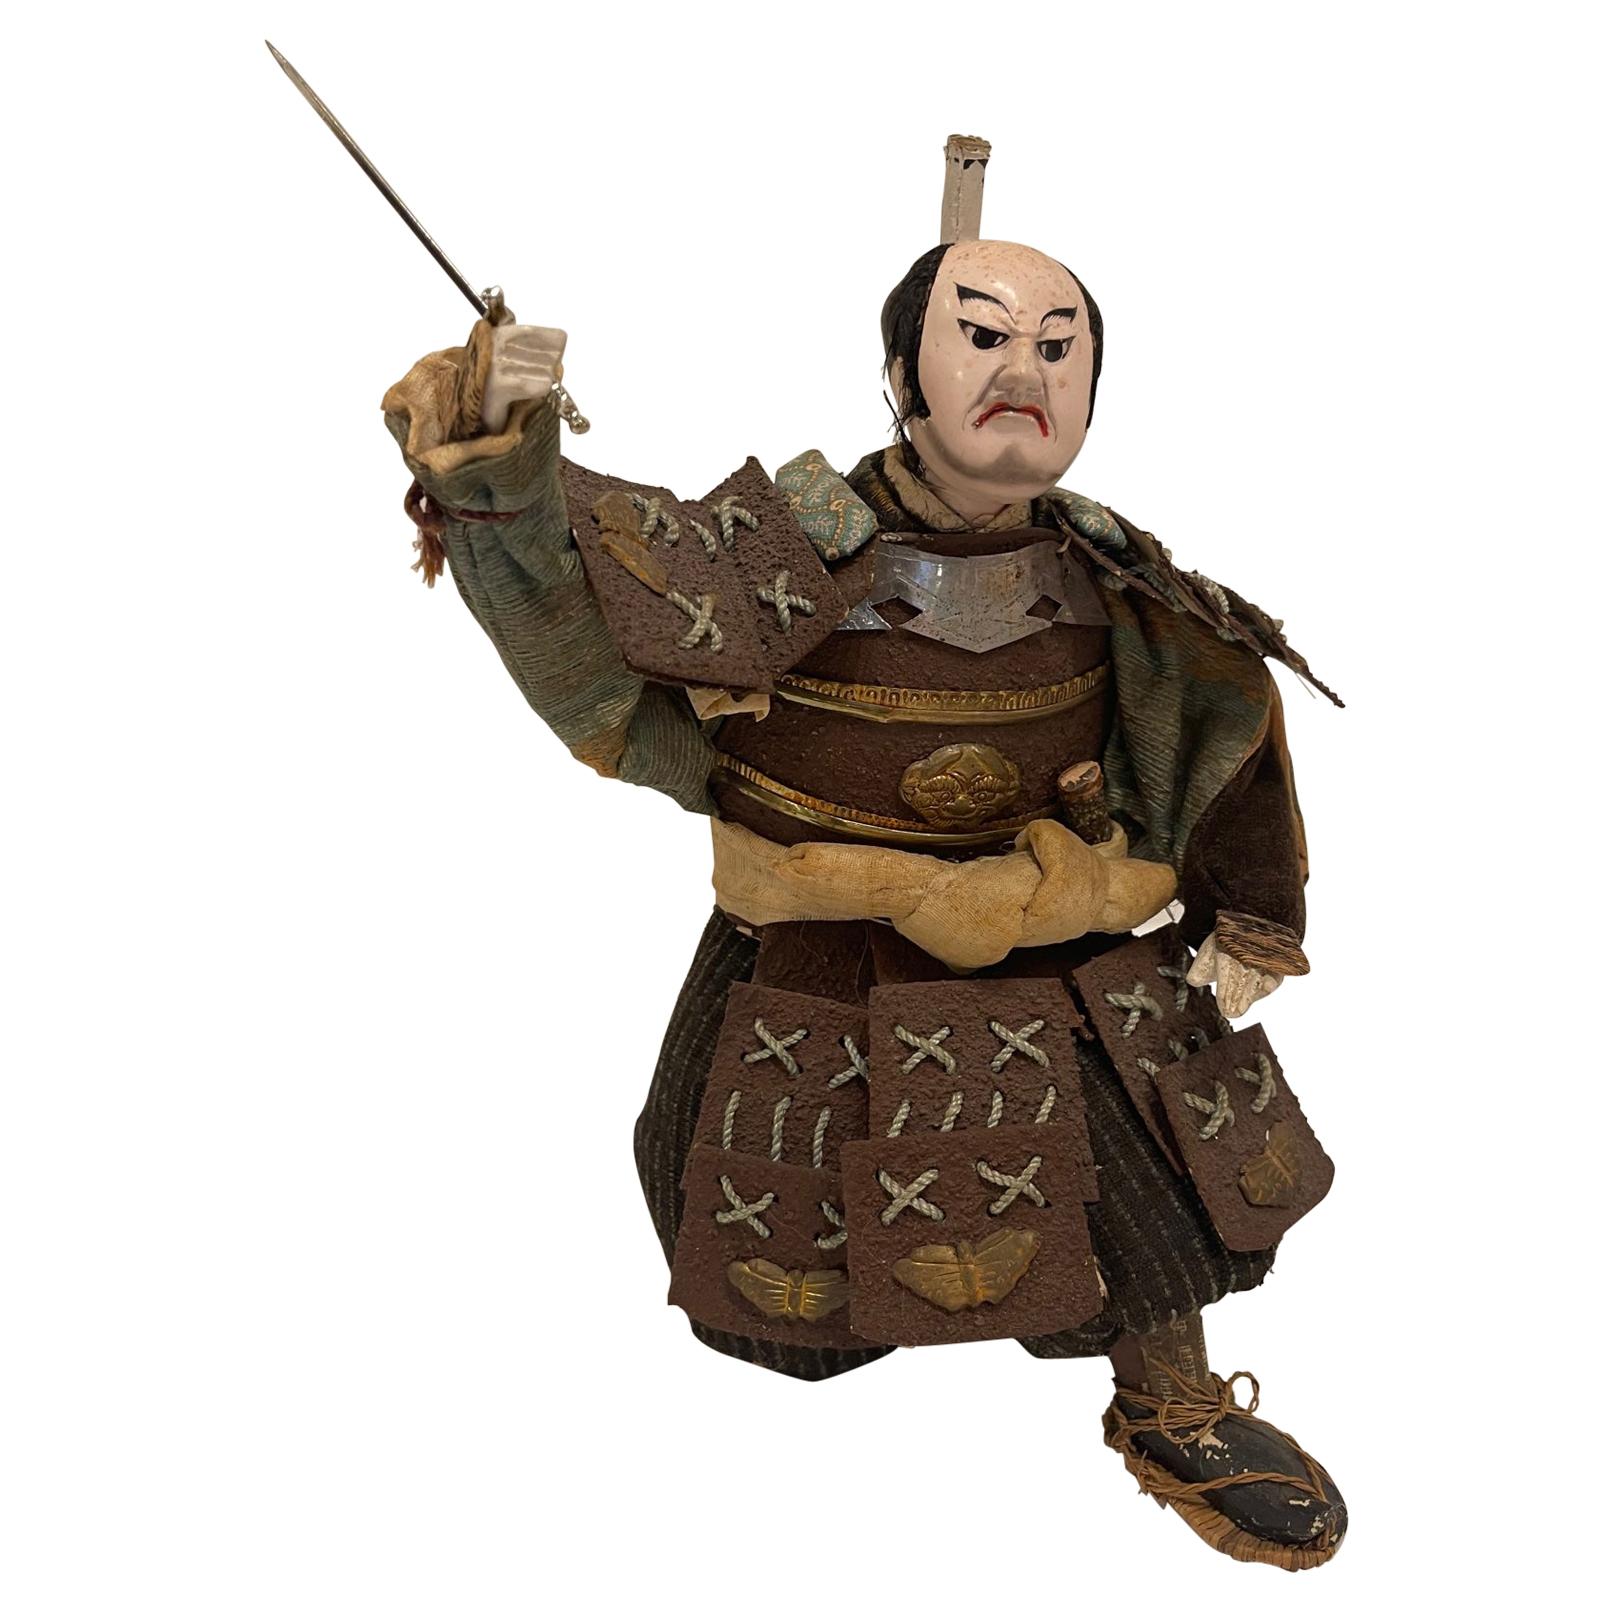 Ancien guerrier samouraï agenouillé de la période Meiji japonaise, vers 1870-1880